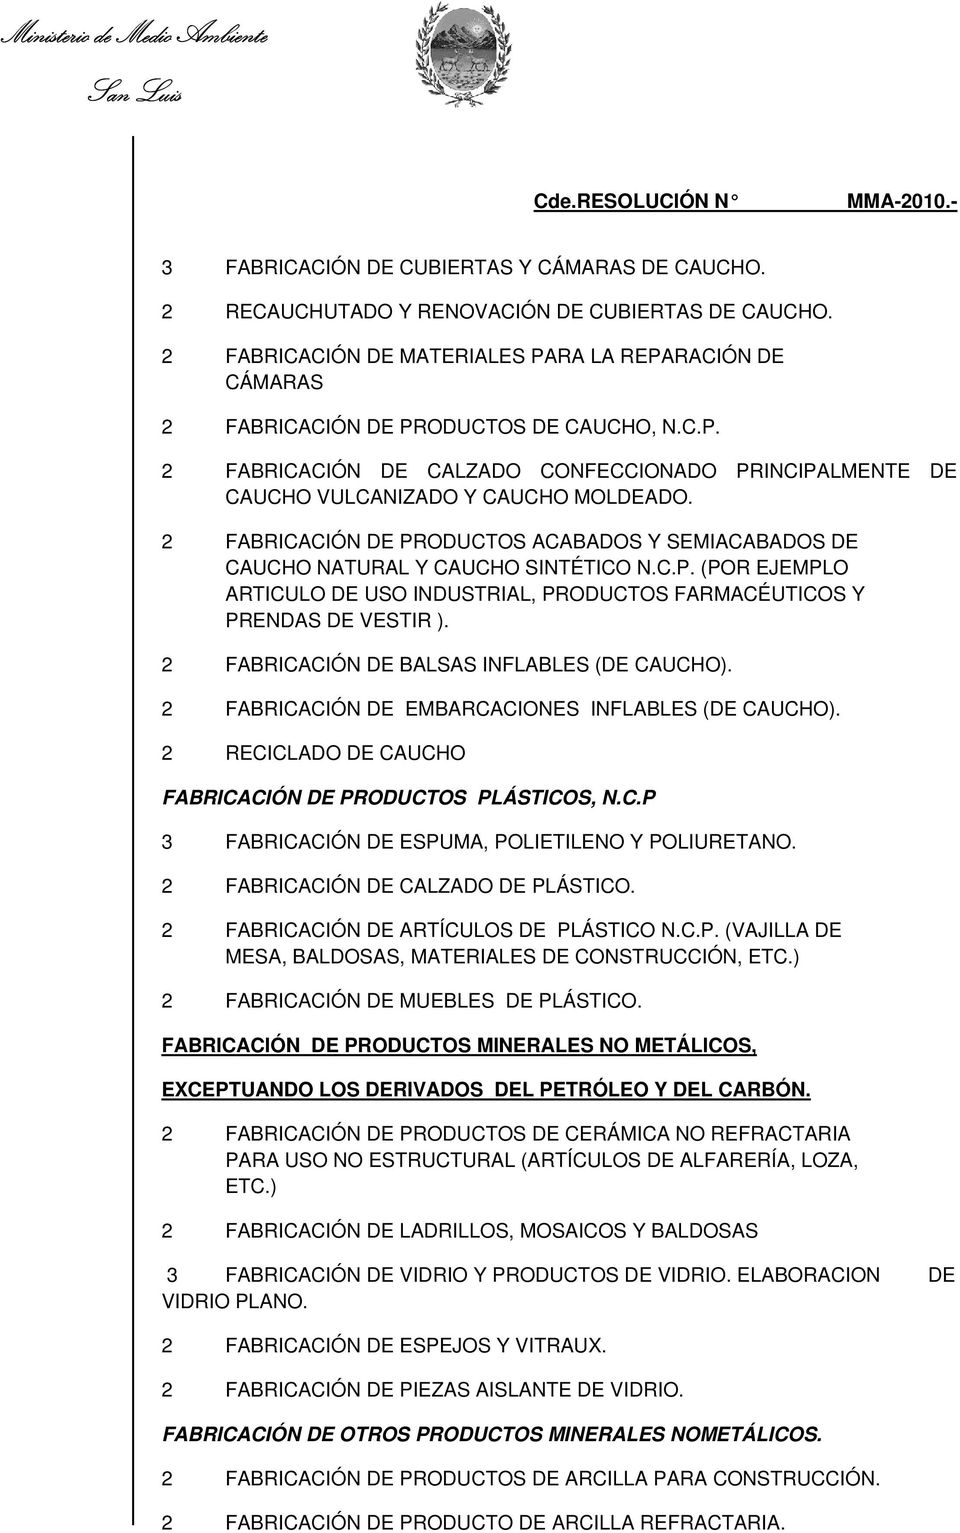 FABRICACIÓN DE PRODUCTOS ACABADOS Y SEMIACABADOS DE CAUCHO NATURAL Y CAUCHO SINTÉTICO N.C.P. (POR EJEMPLO ARTICULO DE USO INDUSTRIAL, PRODUCTOS FARMACÉUTICOS Y PRENDAS DE VESTIR ).